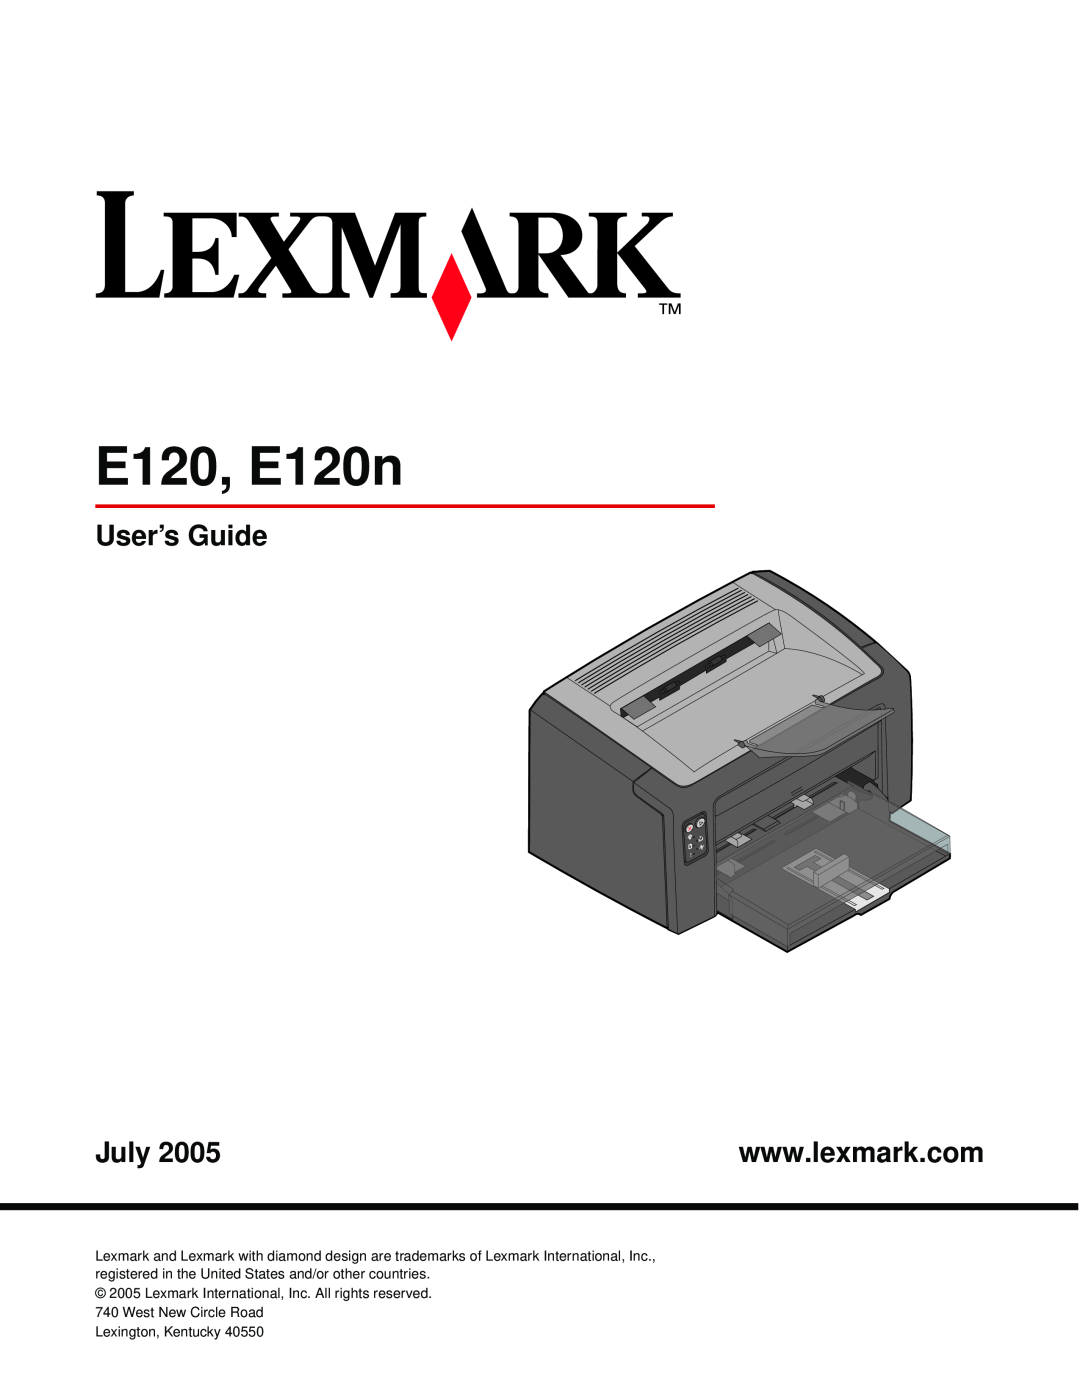 Lexmark manual E120, E120n, User’s Guide, July 